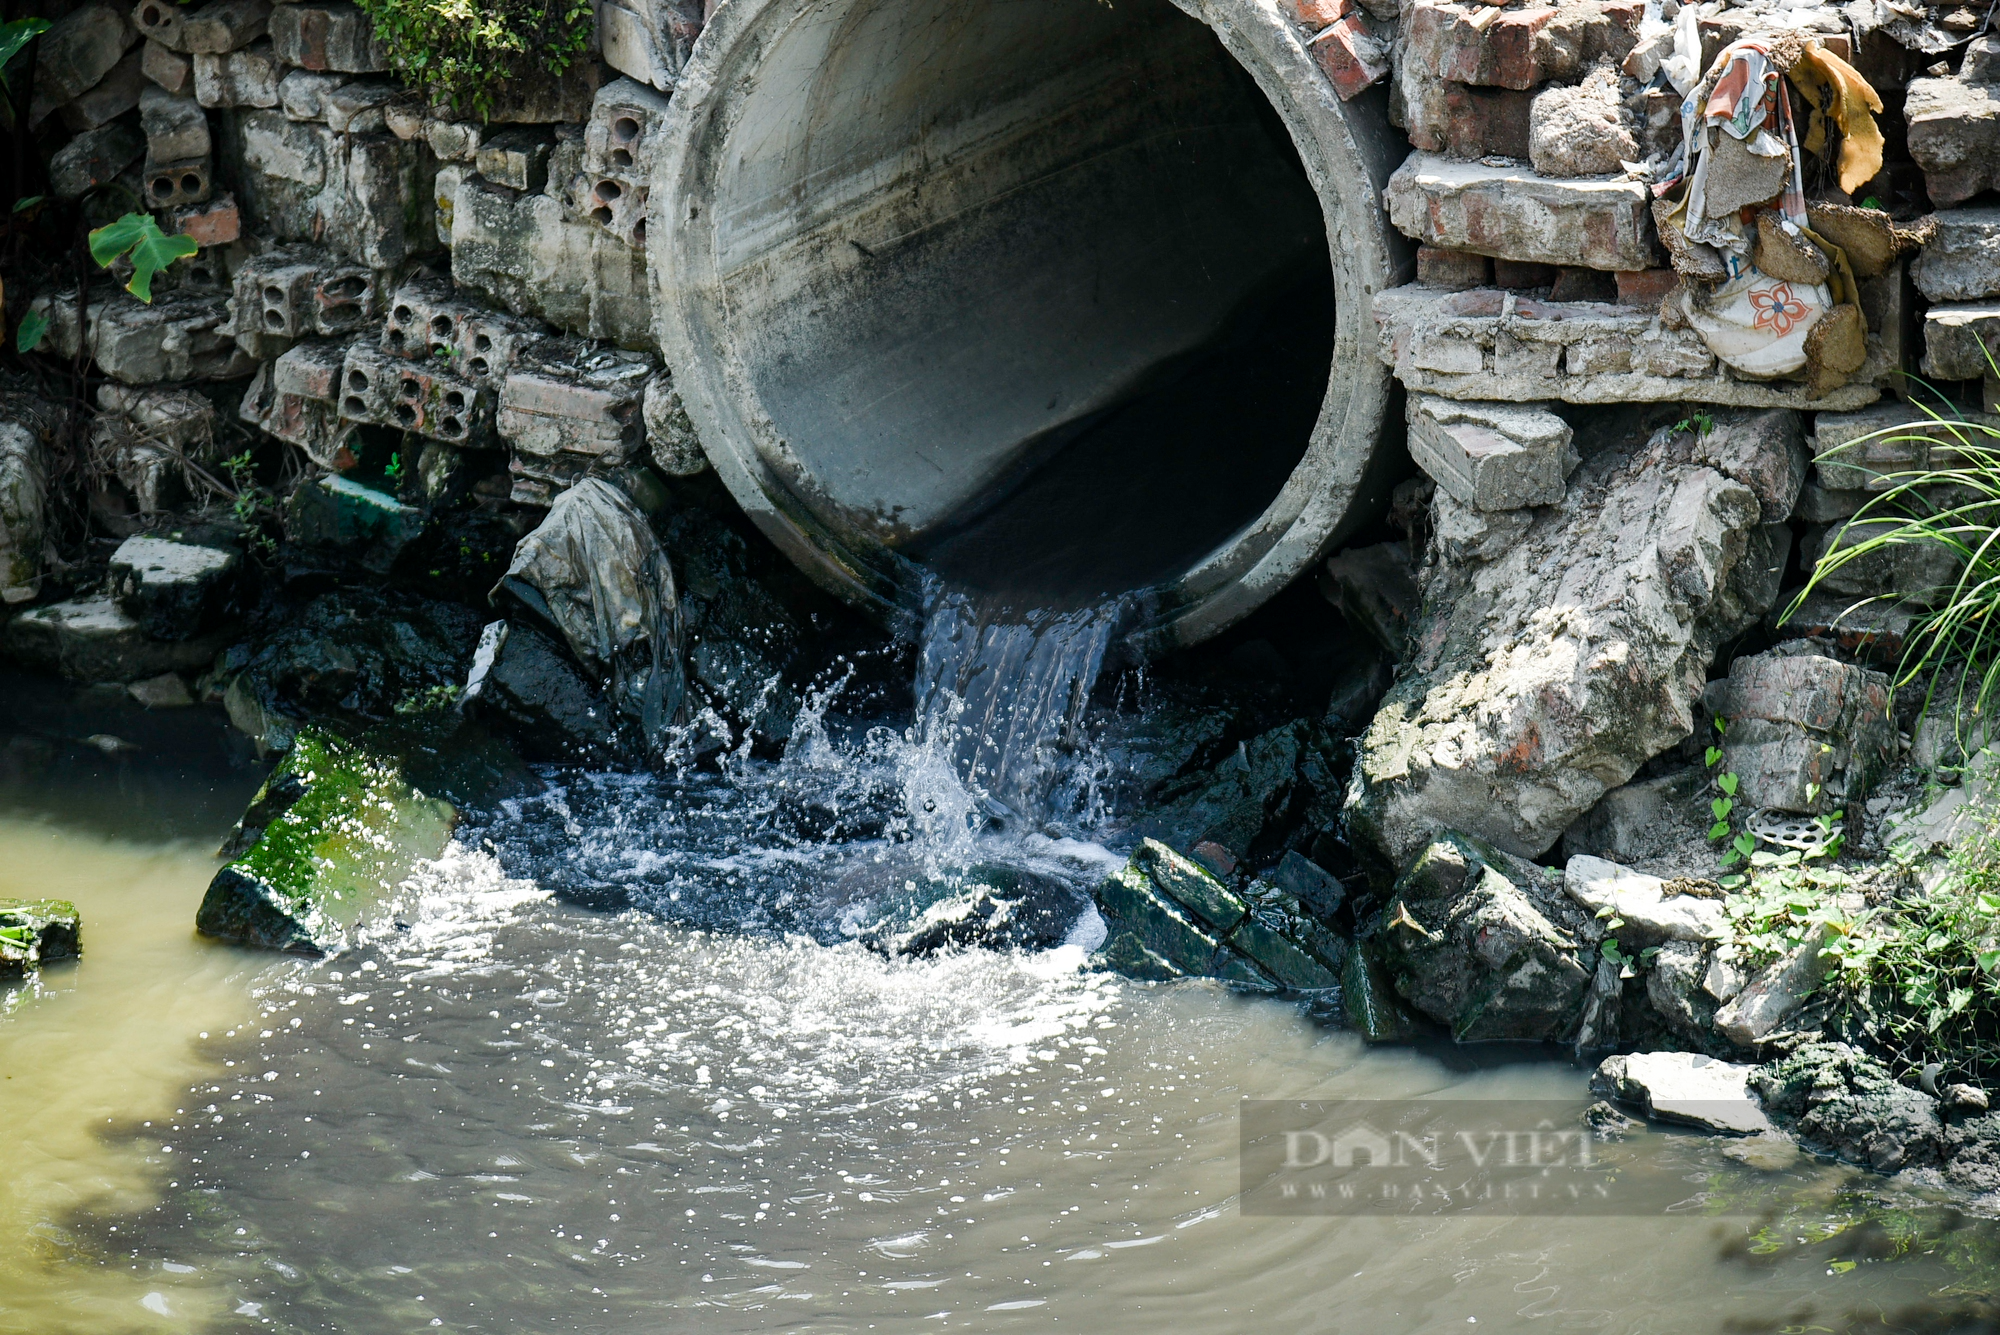 Nước thải và rác làm ảnh hưởng năng suất lúa của nông dân ngoại thành Hà Nội - Ảnh 5.